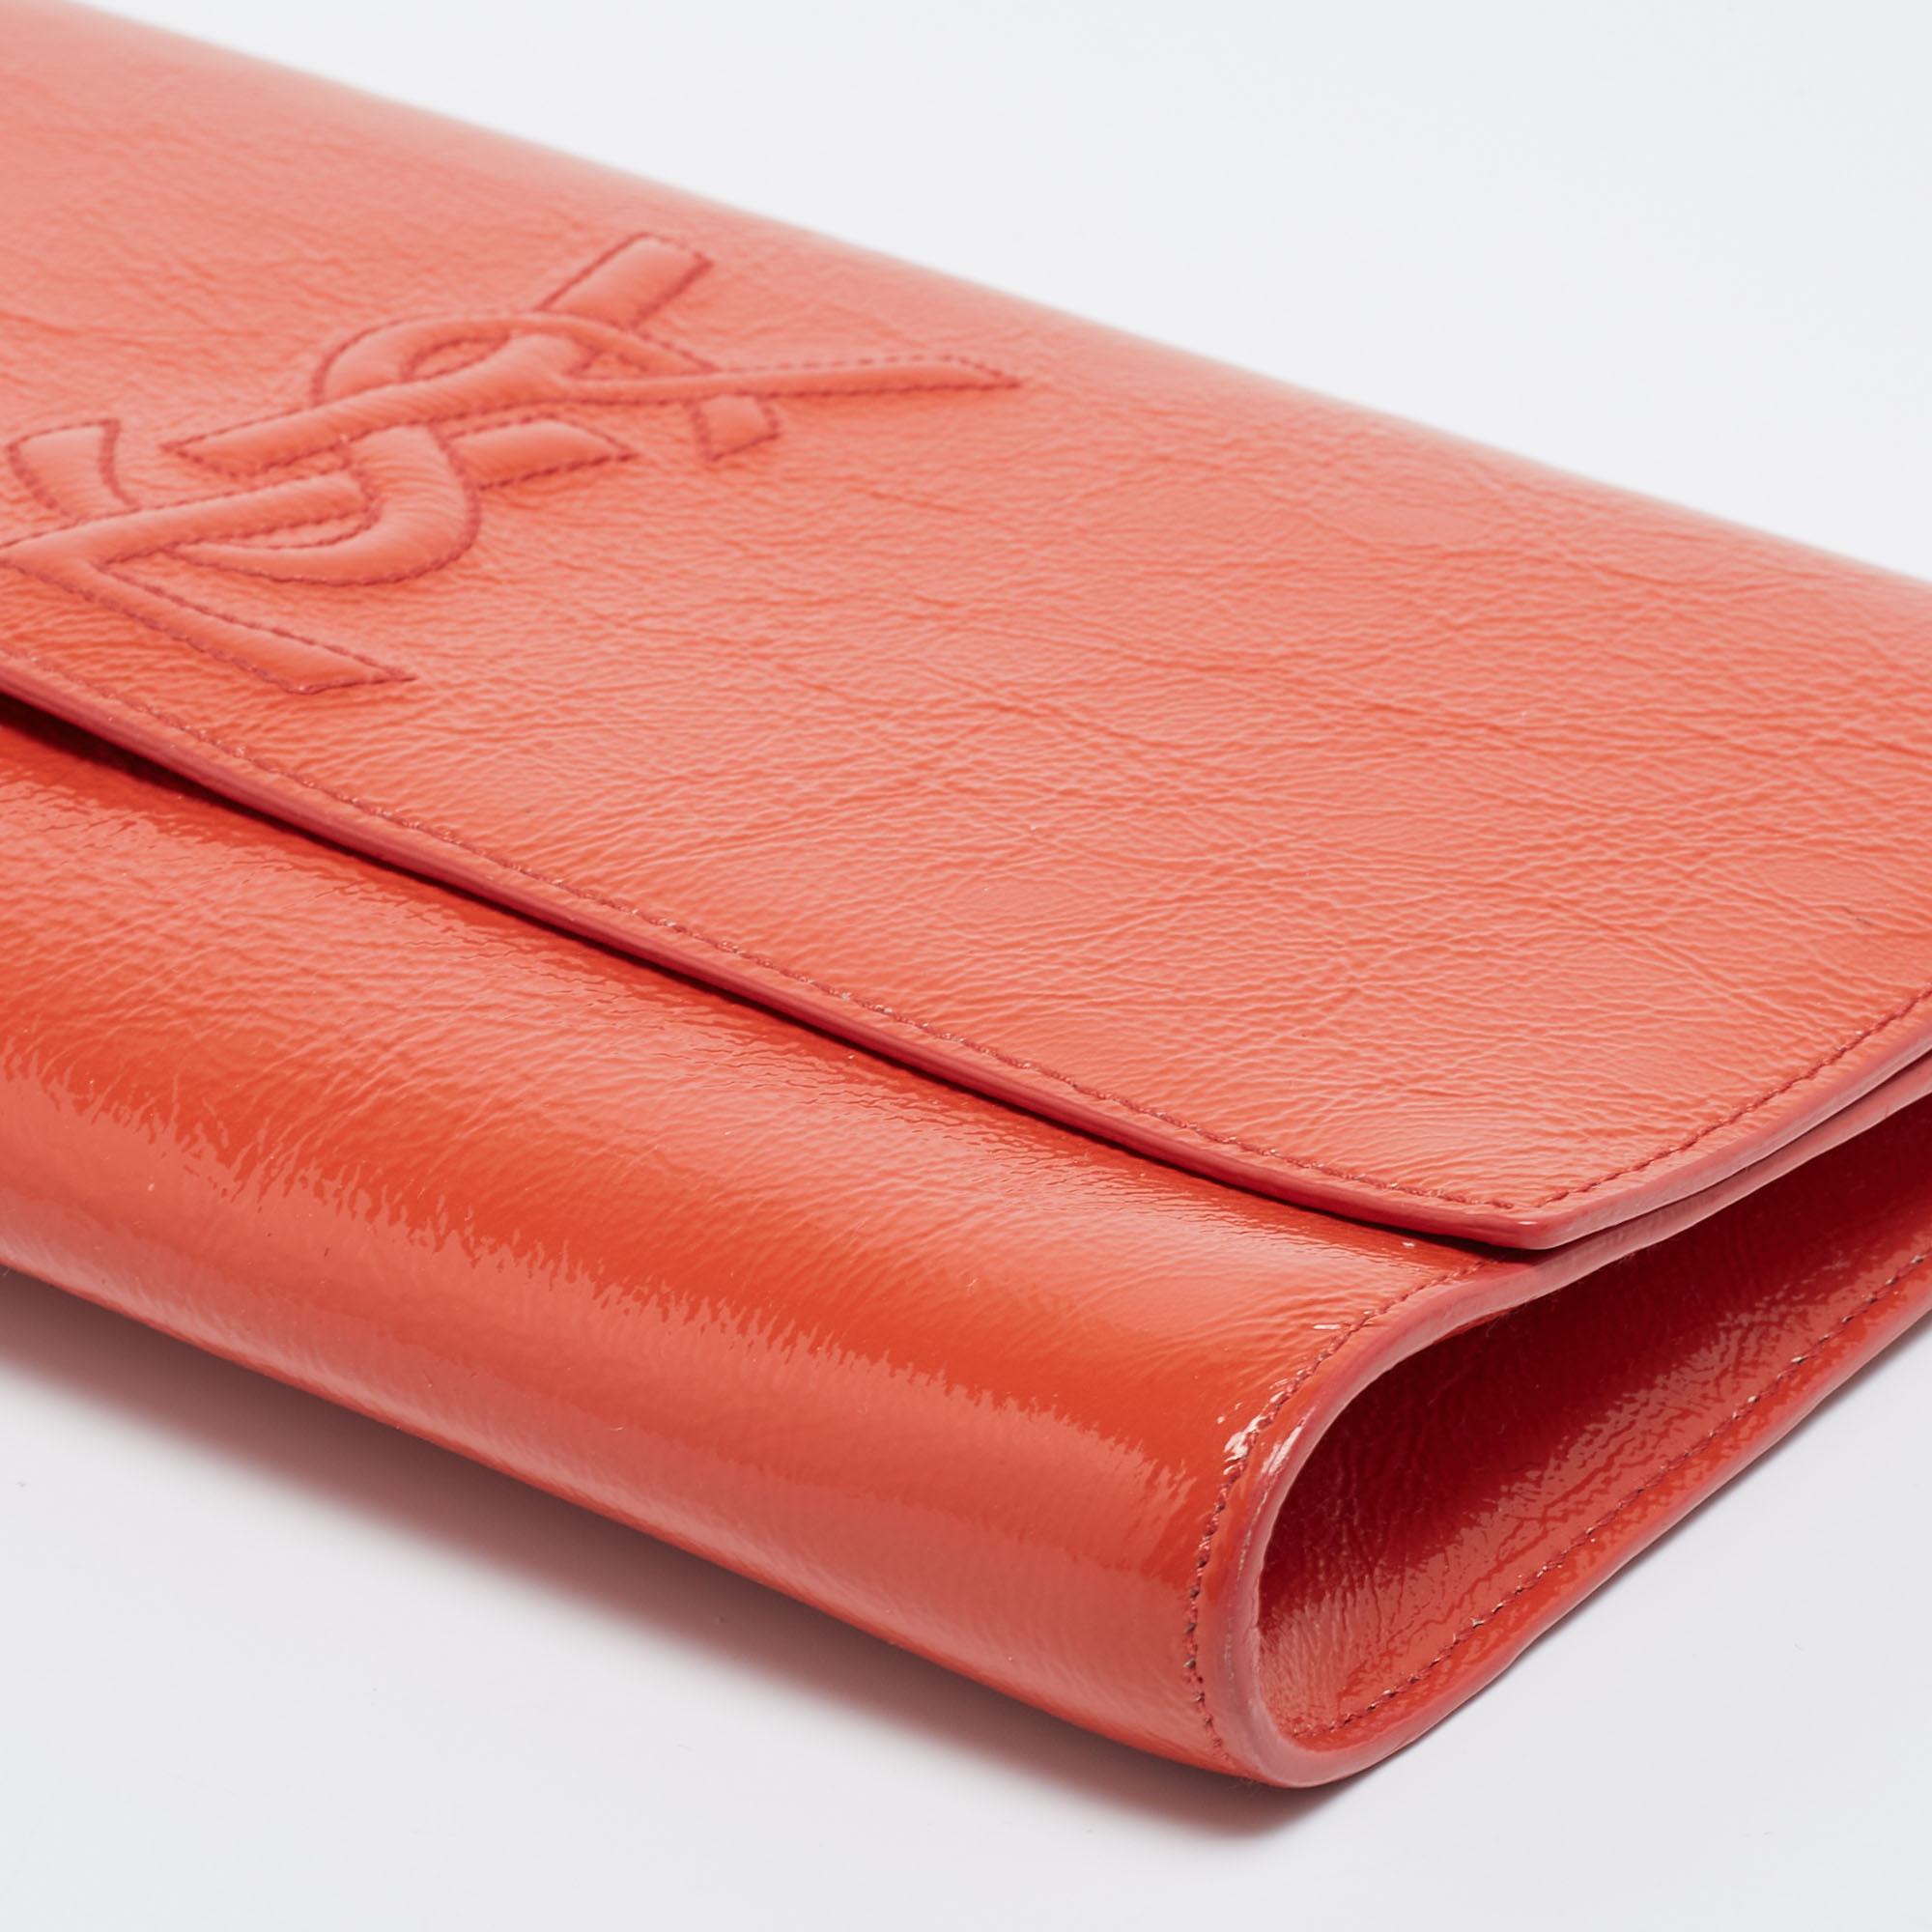 Yves Saint Laurent Orange Patent Leather Belle De Jour Clutch 5